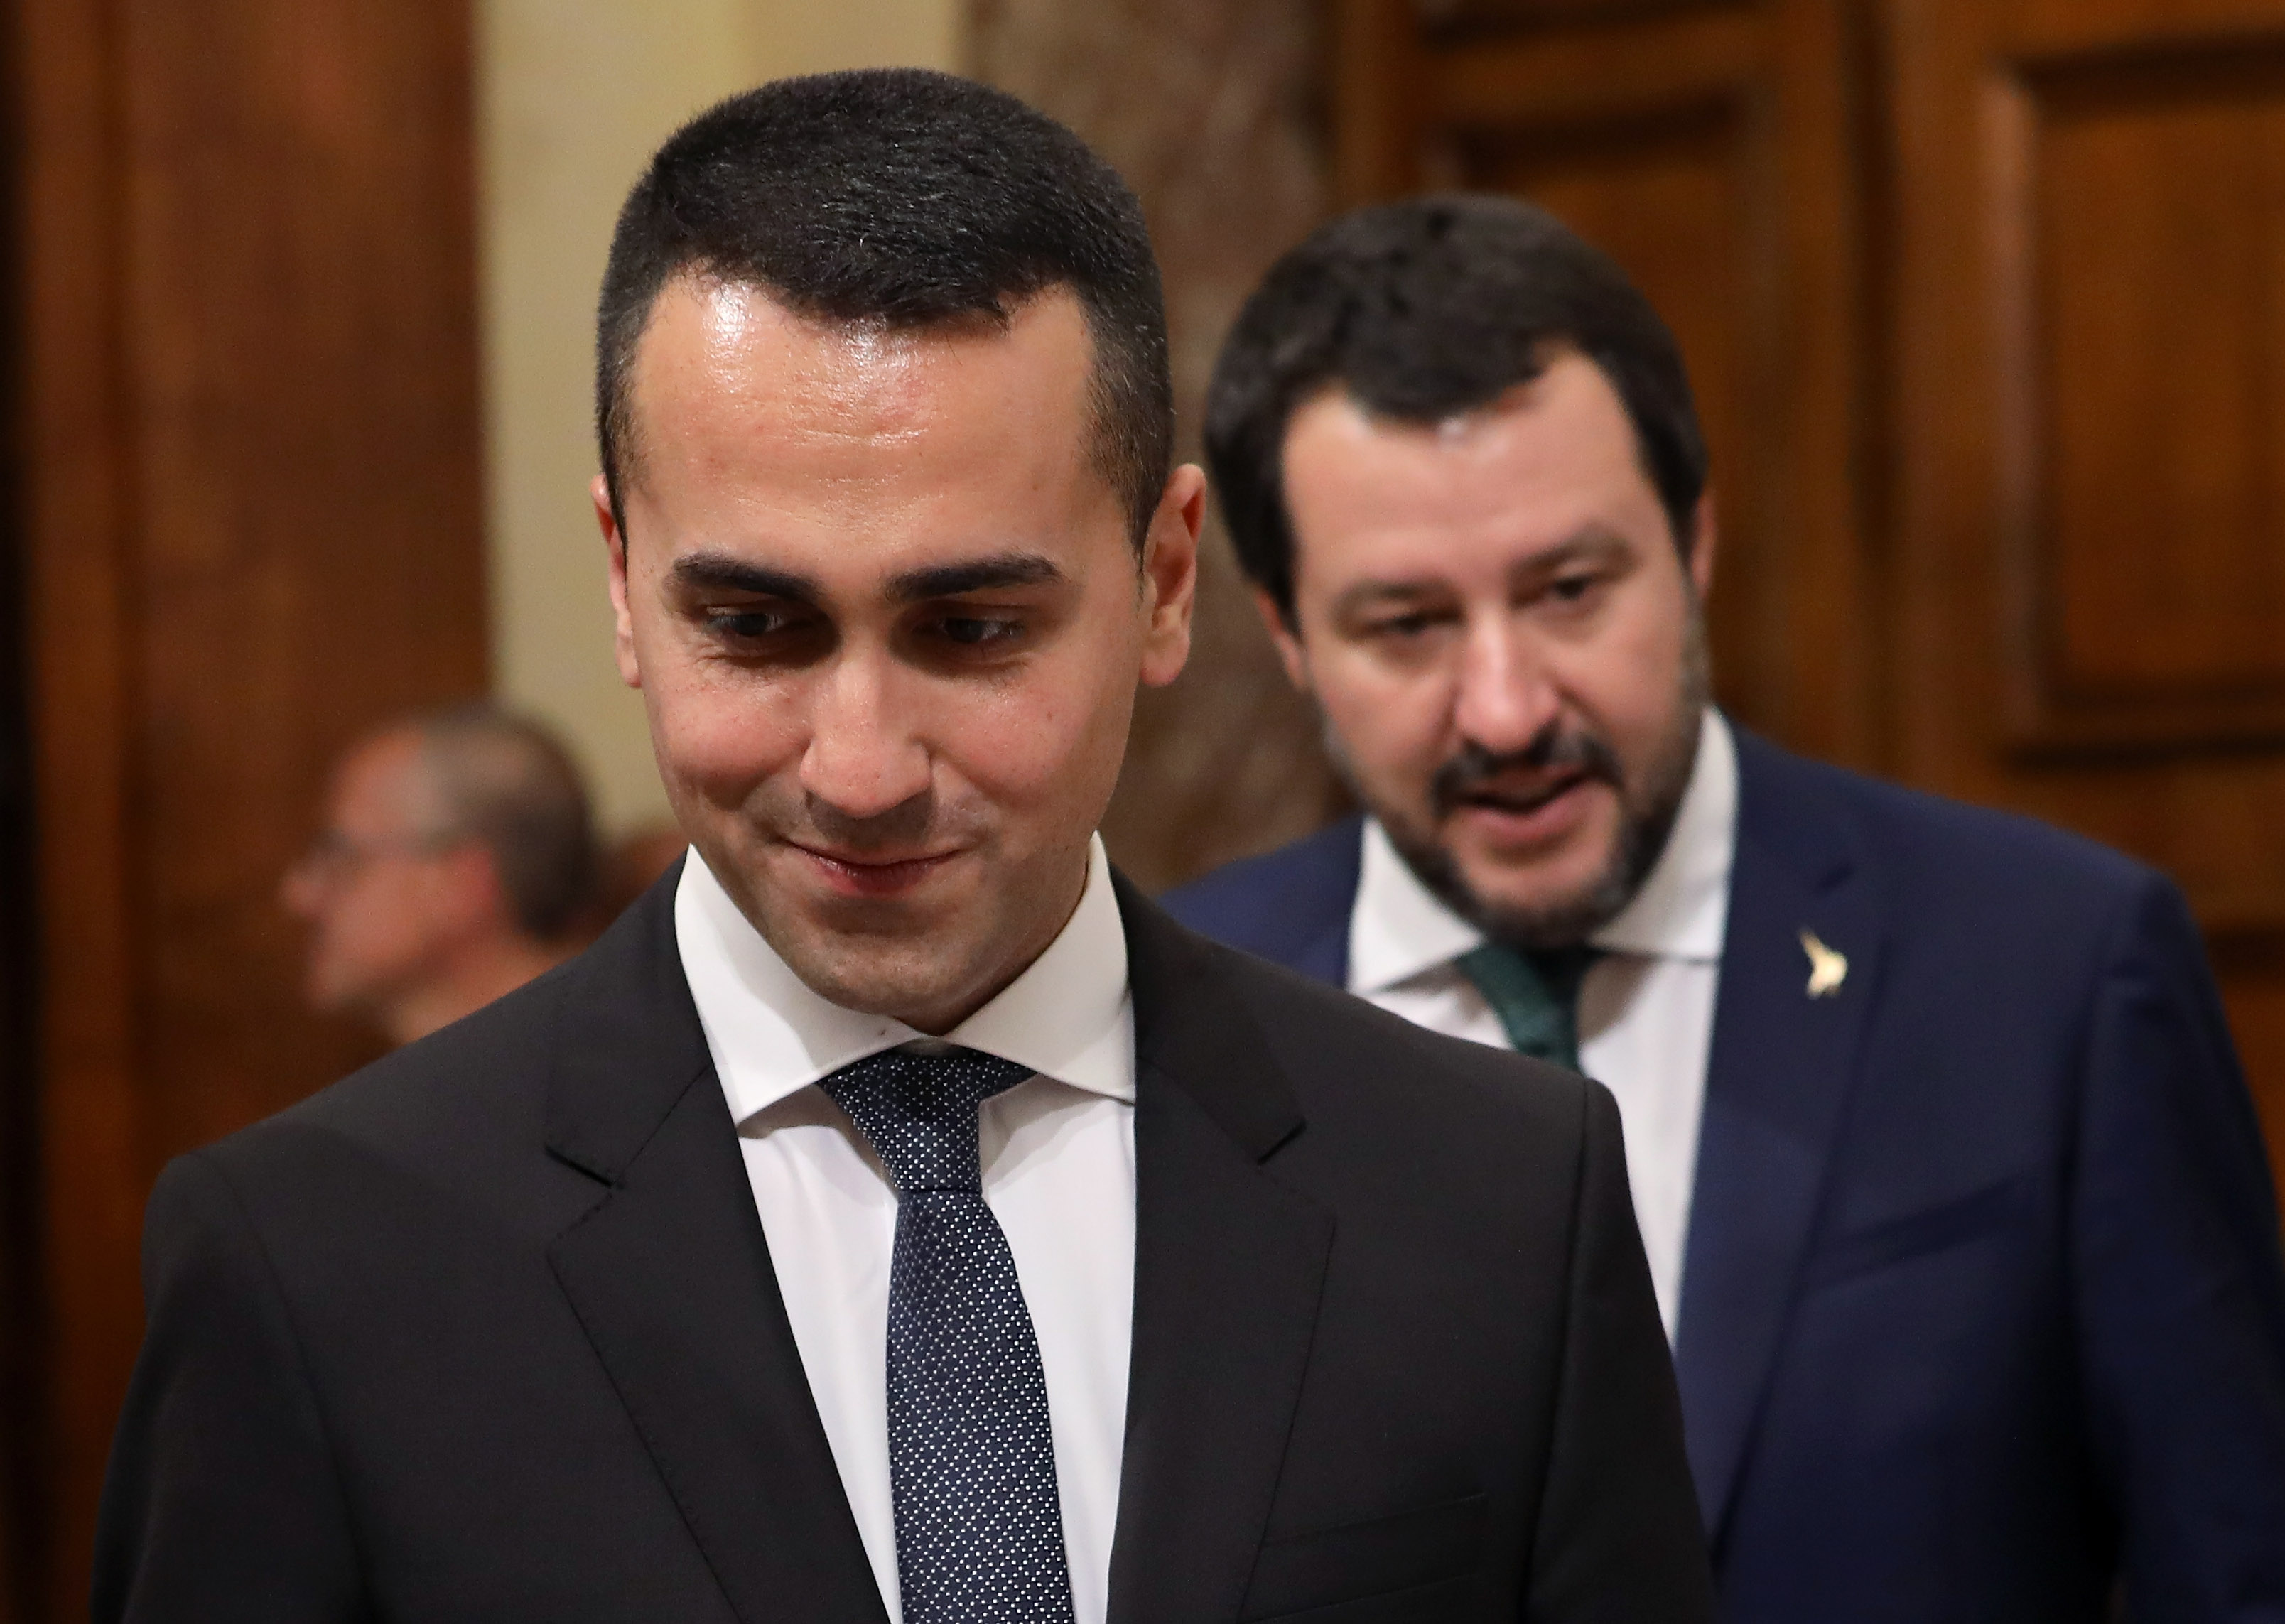 Salvini è l’amico che ti mette nei guai, Di Maio quello che asseconda le sue stronzate